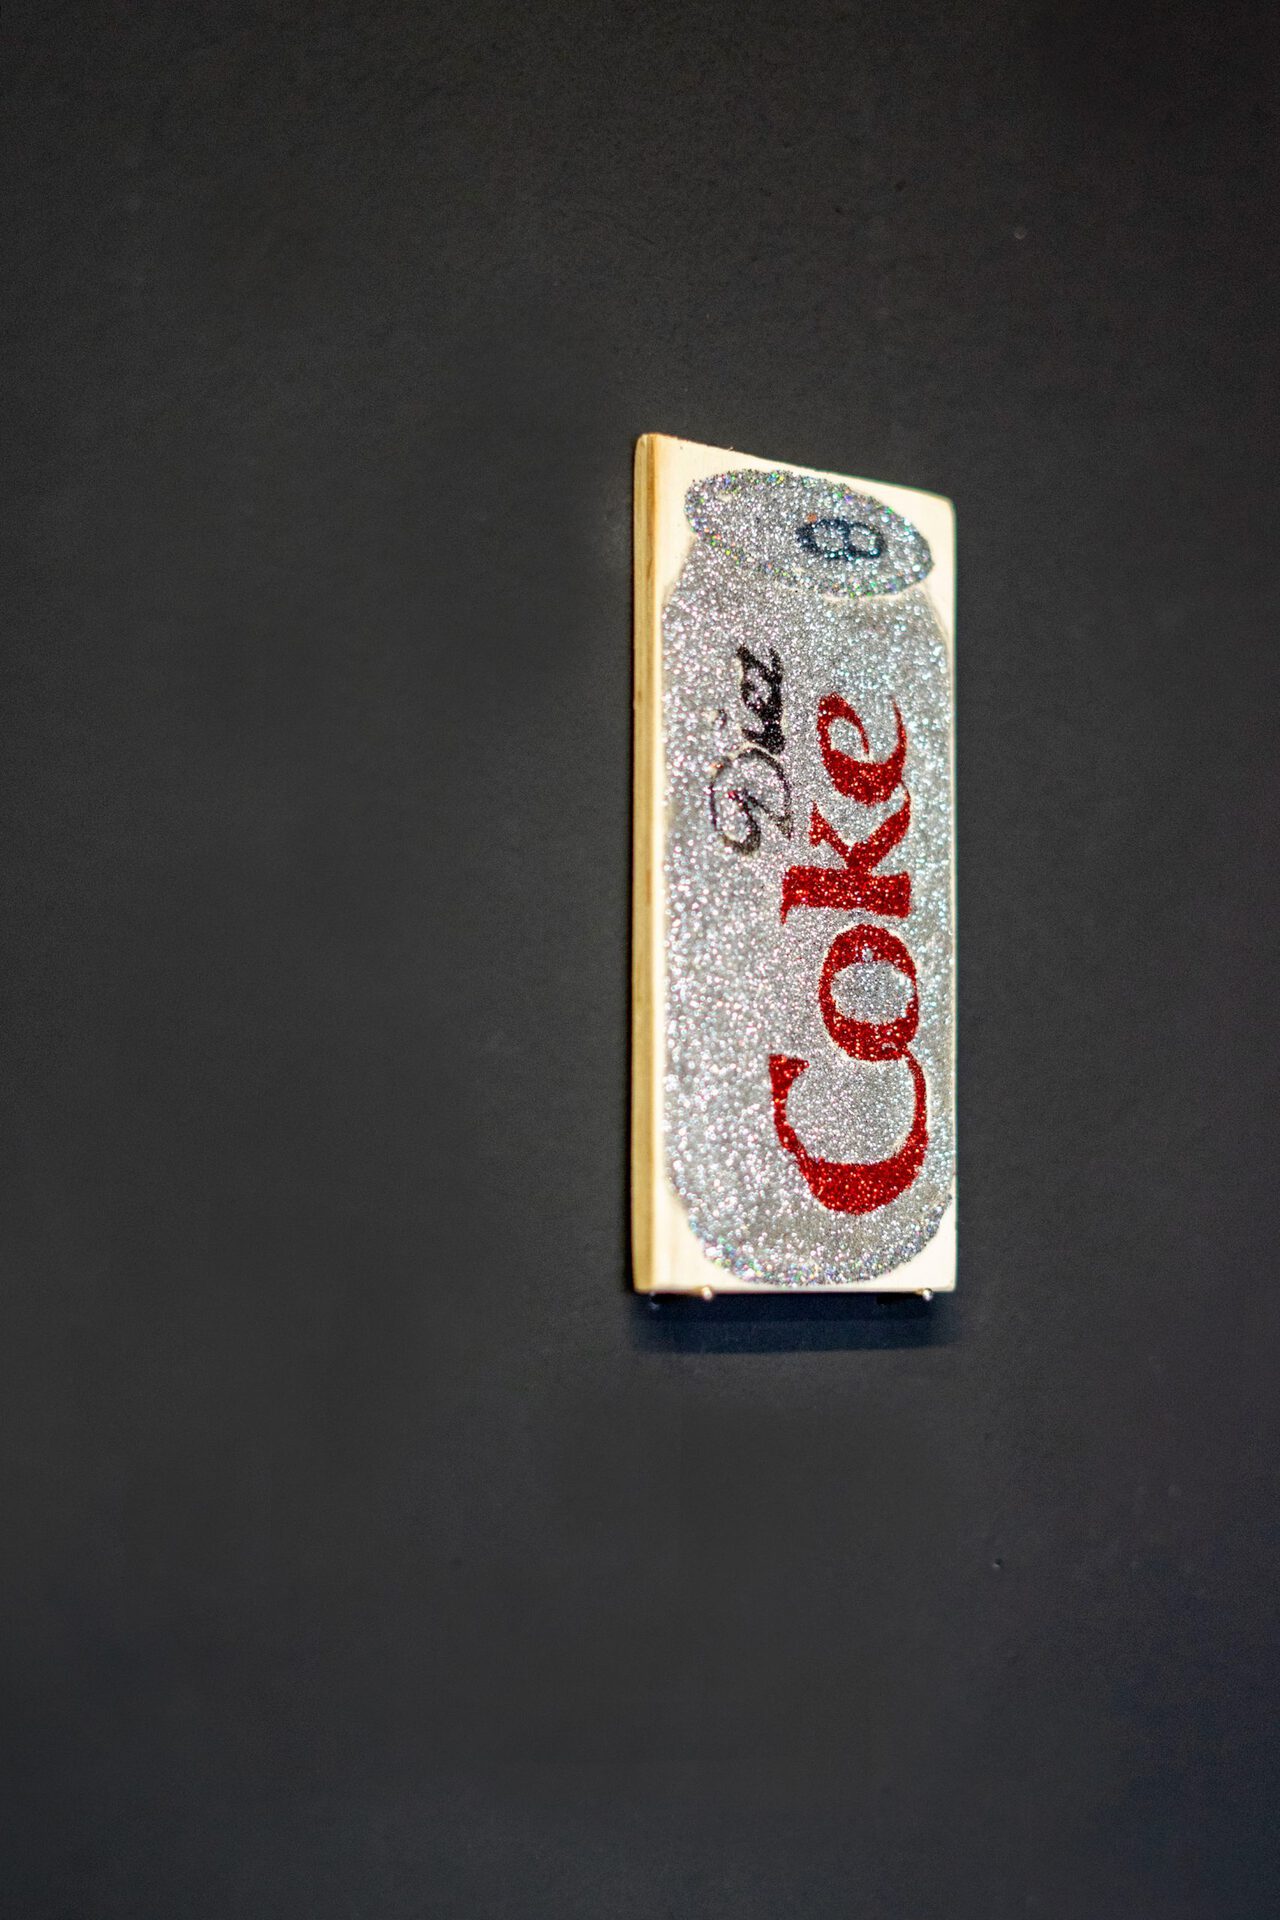 Gina Fischli, Coke 2020, glitter, glue, plywood, 2020, Courtesy: the artist, Photo: Fred Dott